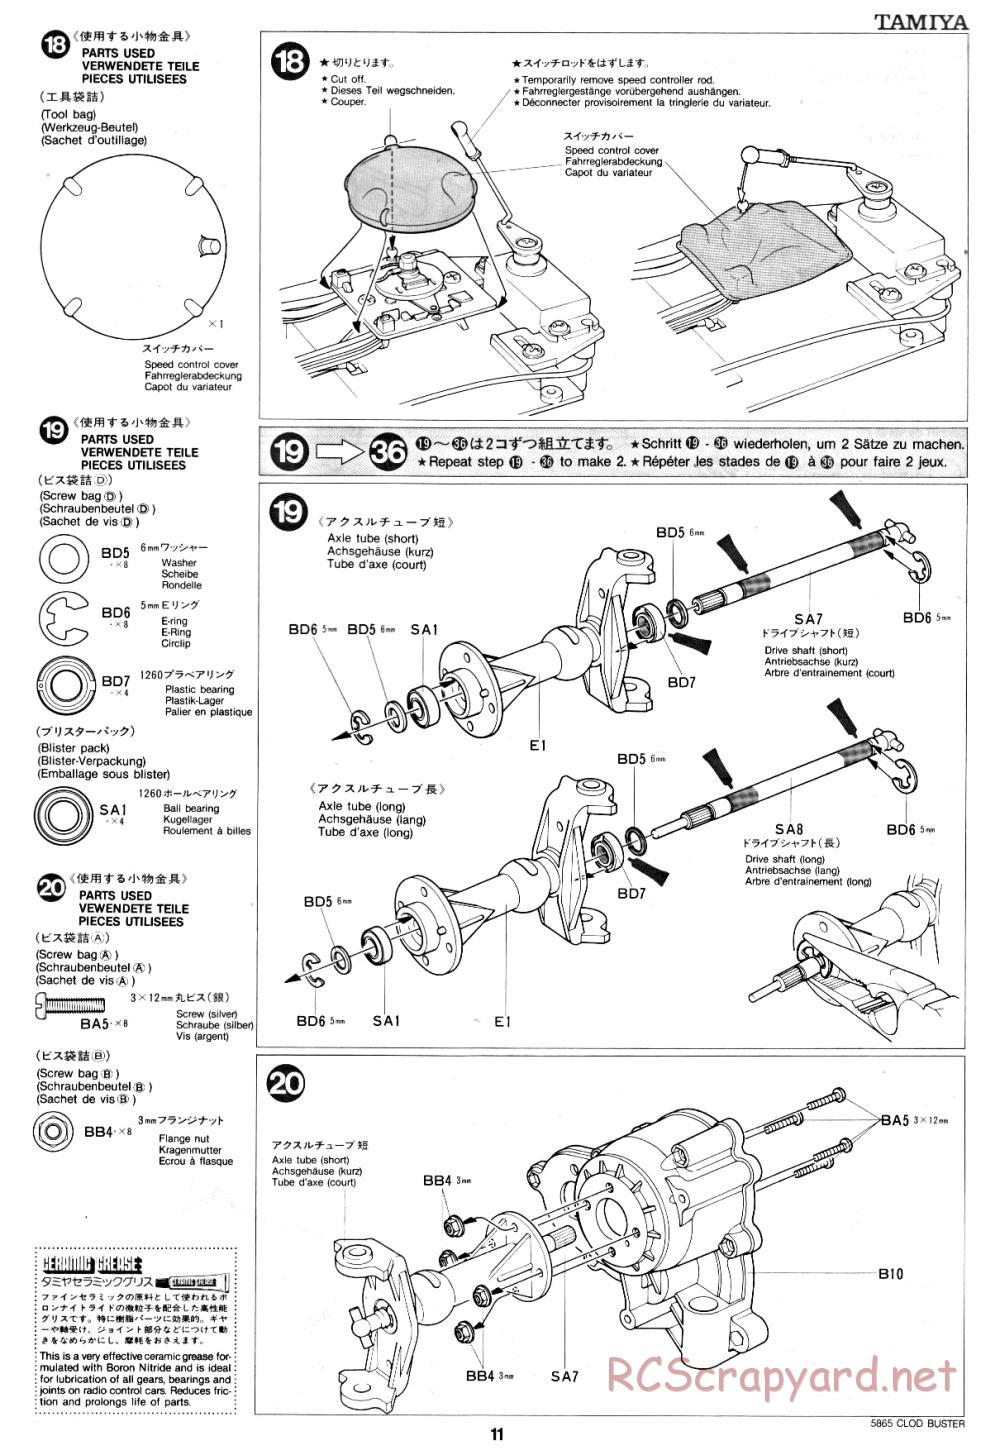 Tamiya - Clod Buster - 58065 - Manual - Page 11